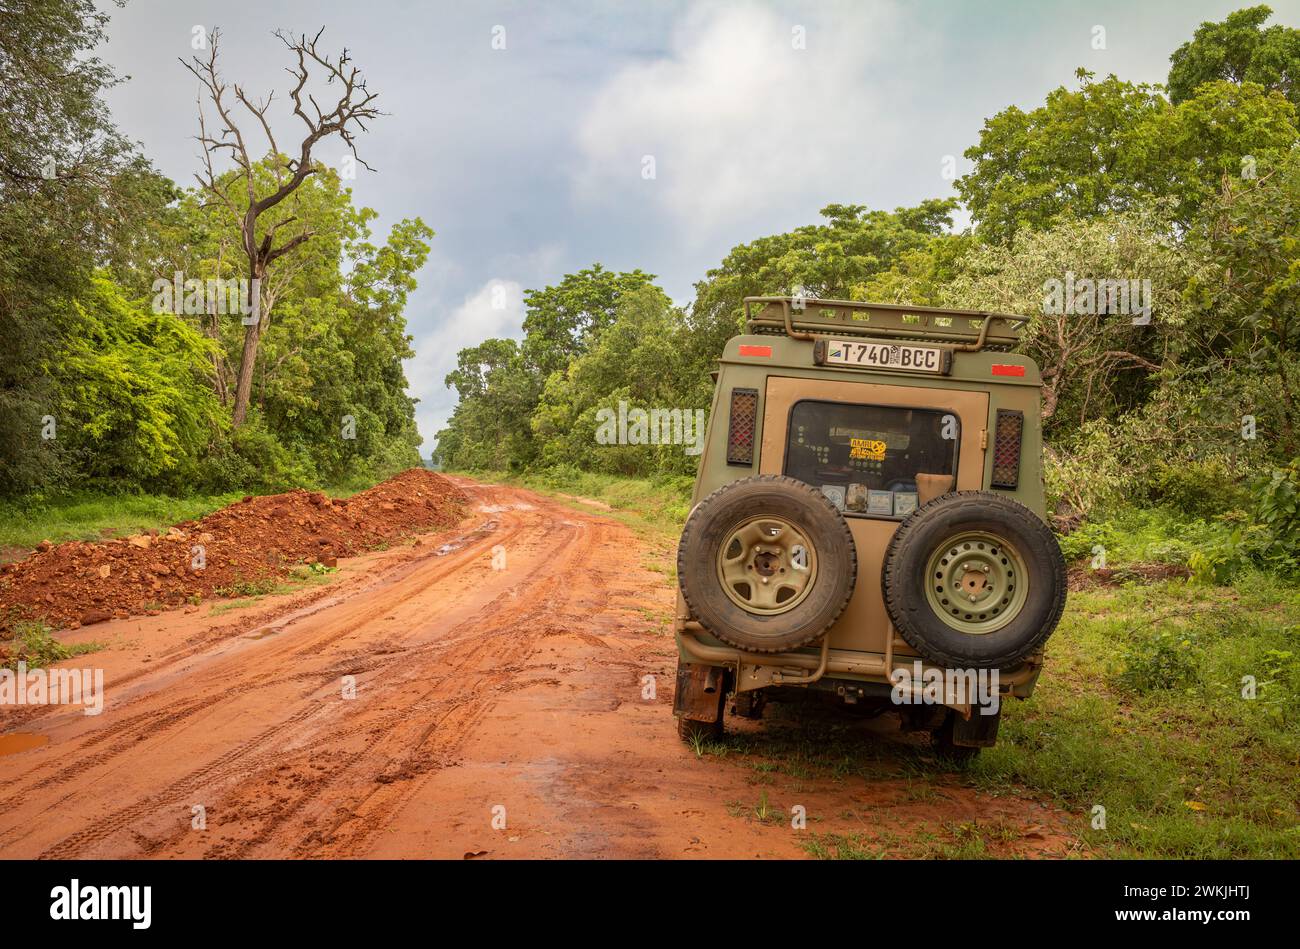 Un véhicule 4x4 sur une route de terre rouge après de fortes pluies dans la nature sauvage près de Cholesamvula en Tanzanie rurale. Banque D'Images